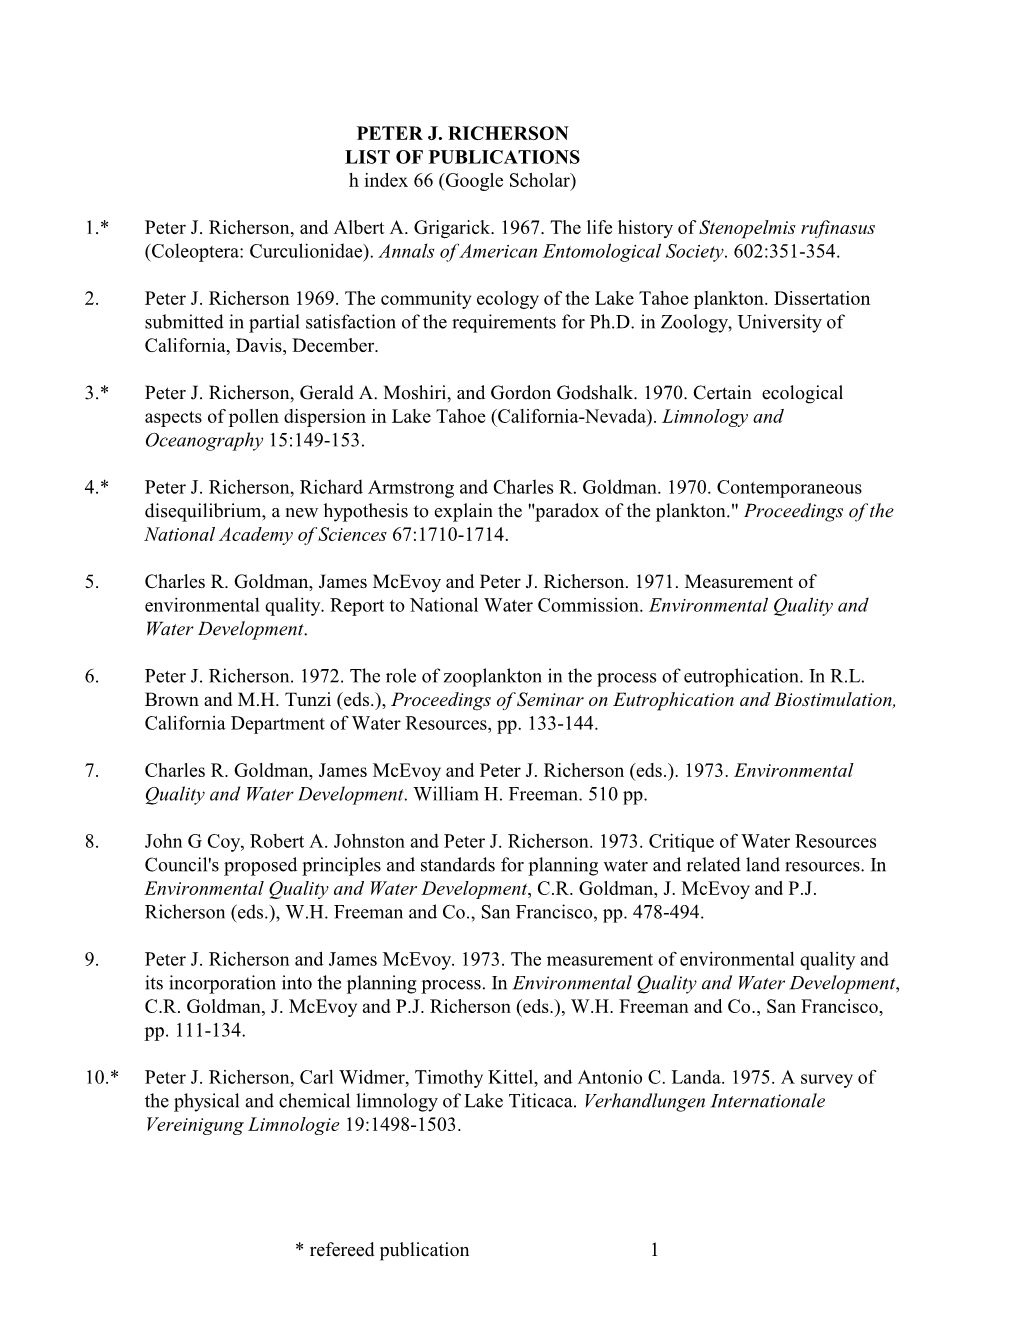 PETER J. RICHERSON LIST of PUBLICATIONS H Index 66 (Google Scholar)